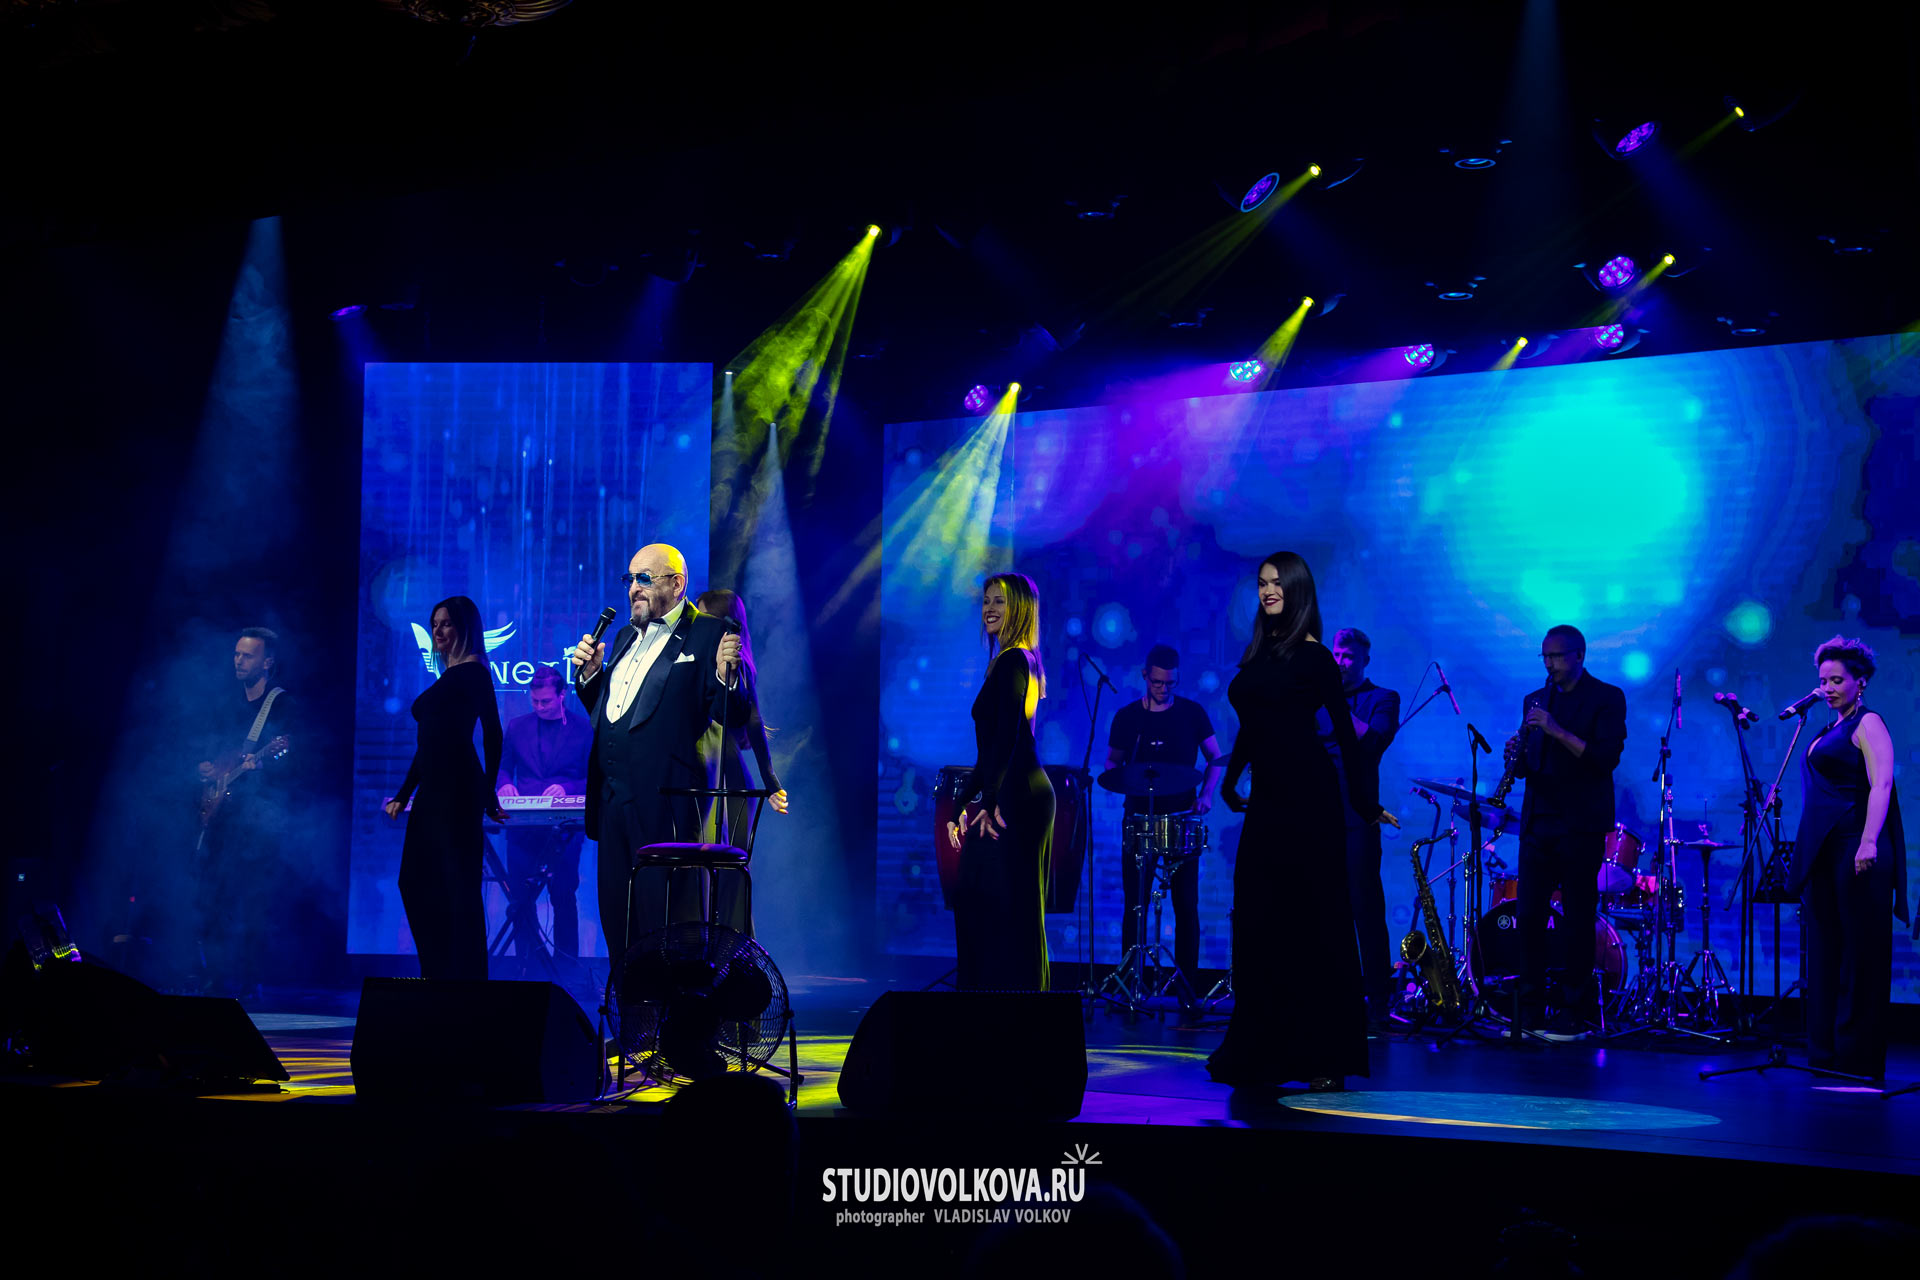 концерт Михаила Шуфутинского в Екатеринбурге. фотограф Владислав ВОЛКОВ